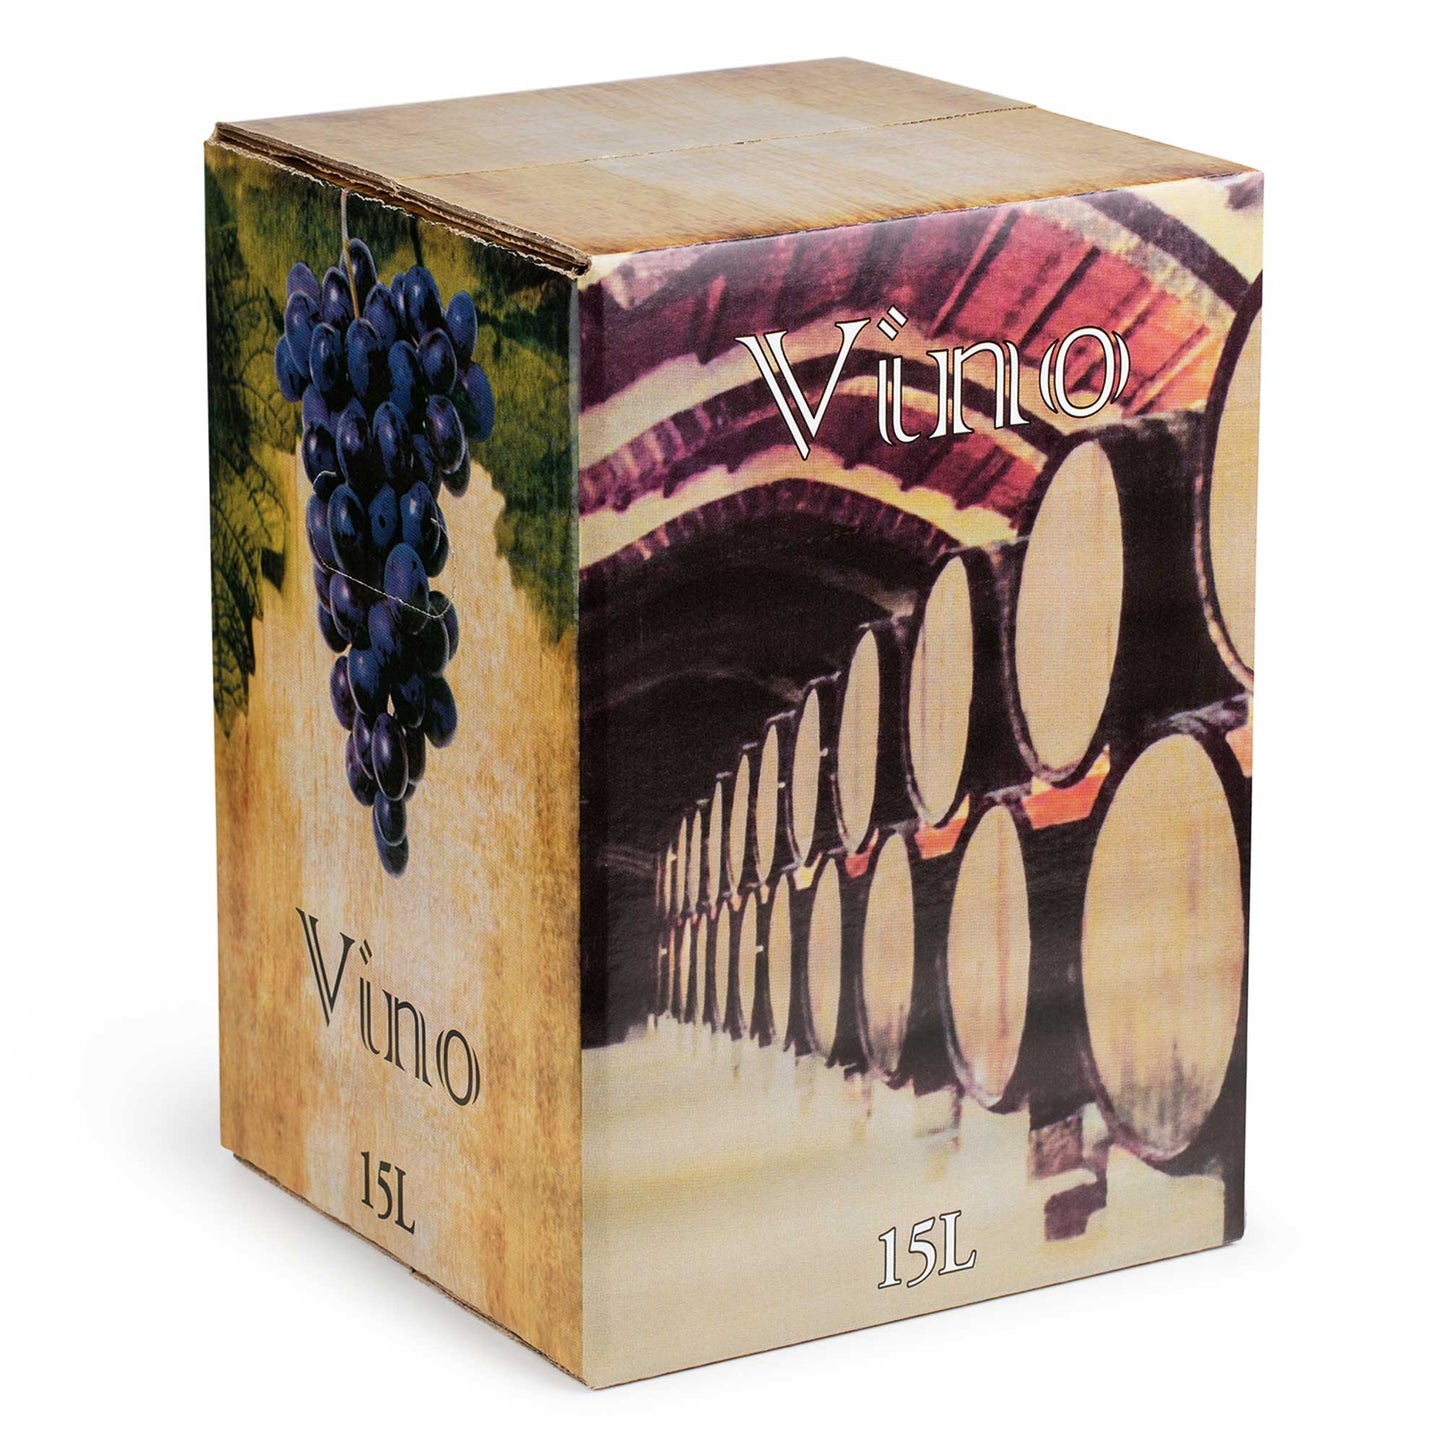 Bag in Box 15 Litros Caja Eralta de tinto con Bodegas | grifo La – Calvo Bodegas tinto vino Sanz vino